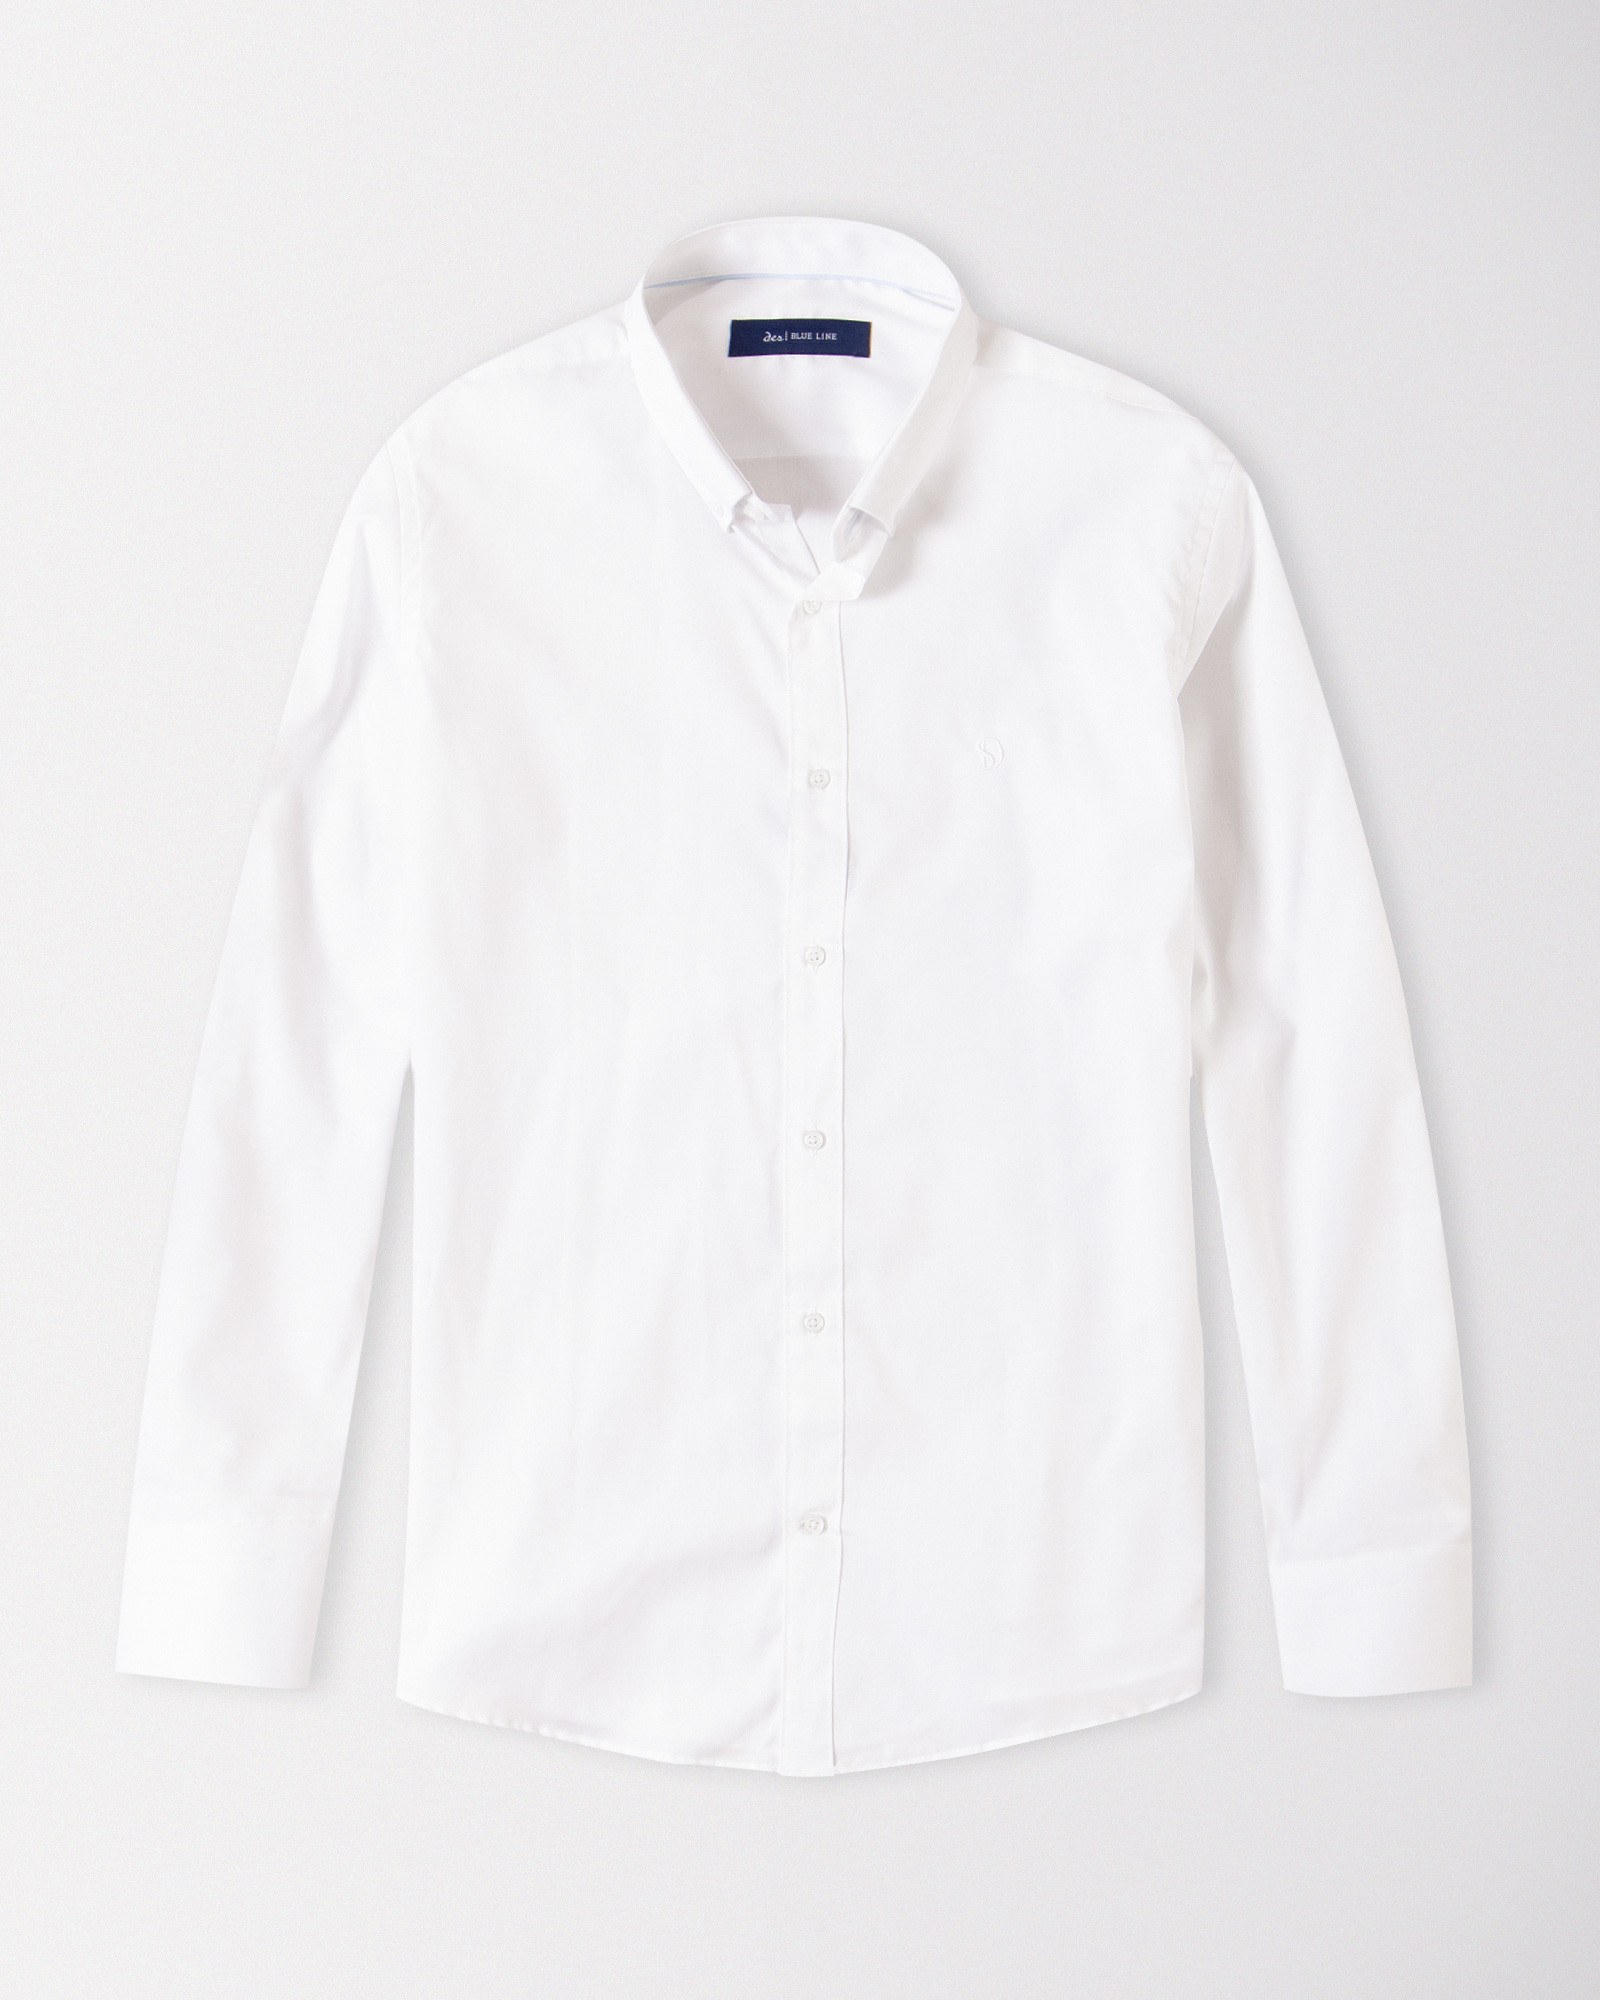 پیراهن آستین بلند رسمی سفید 18421171